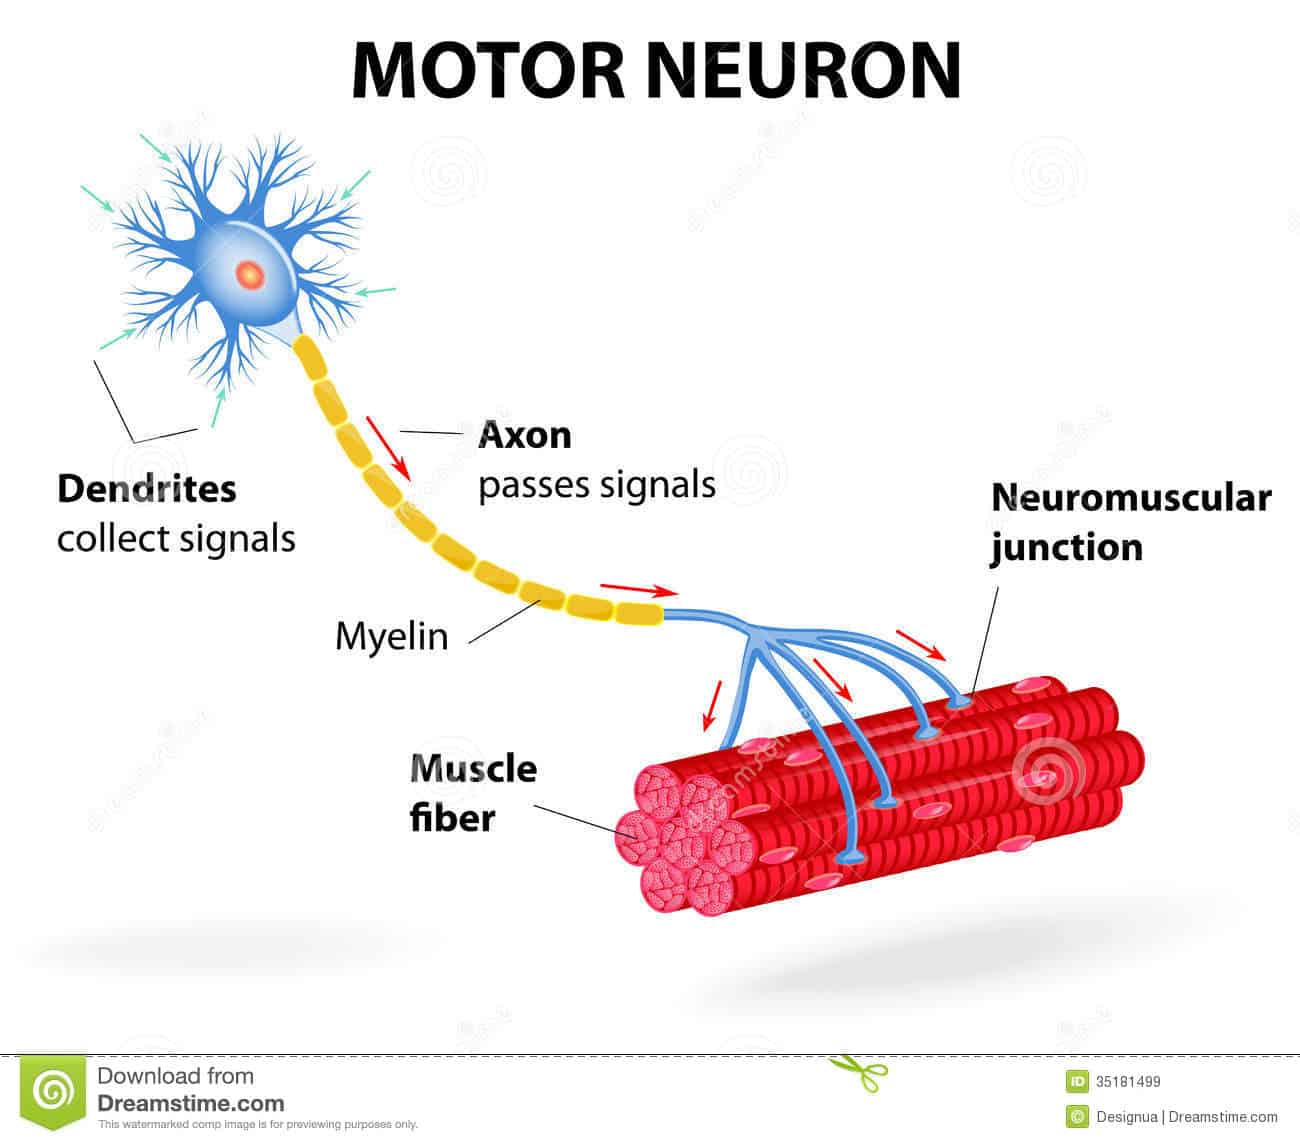 Neuronas motoras superiores en acción